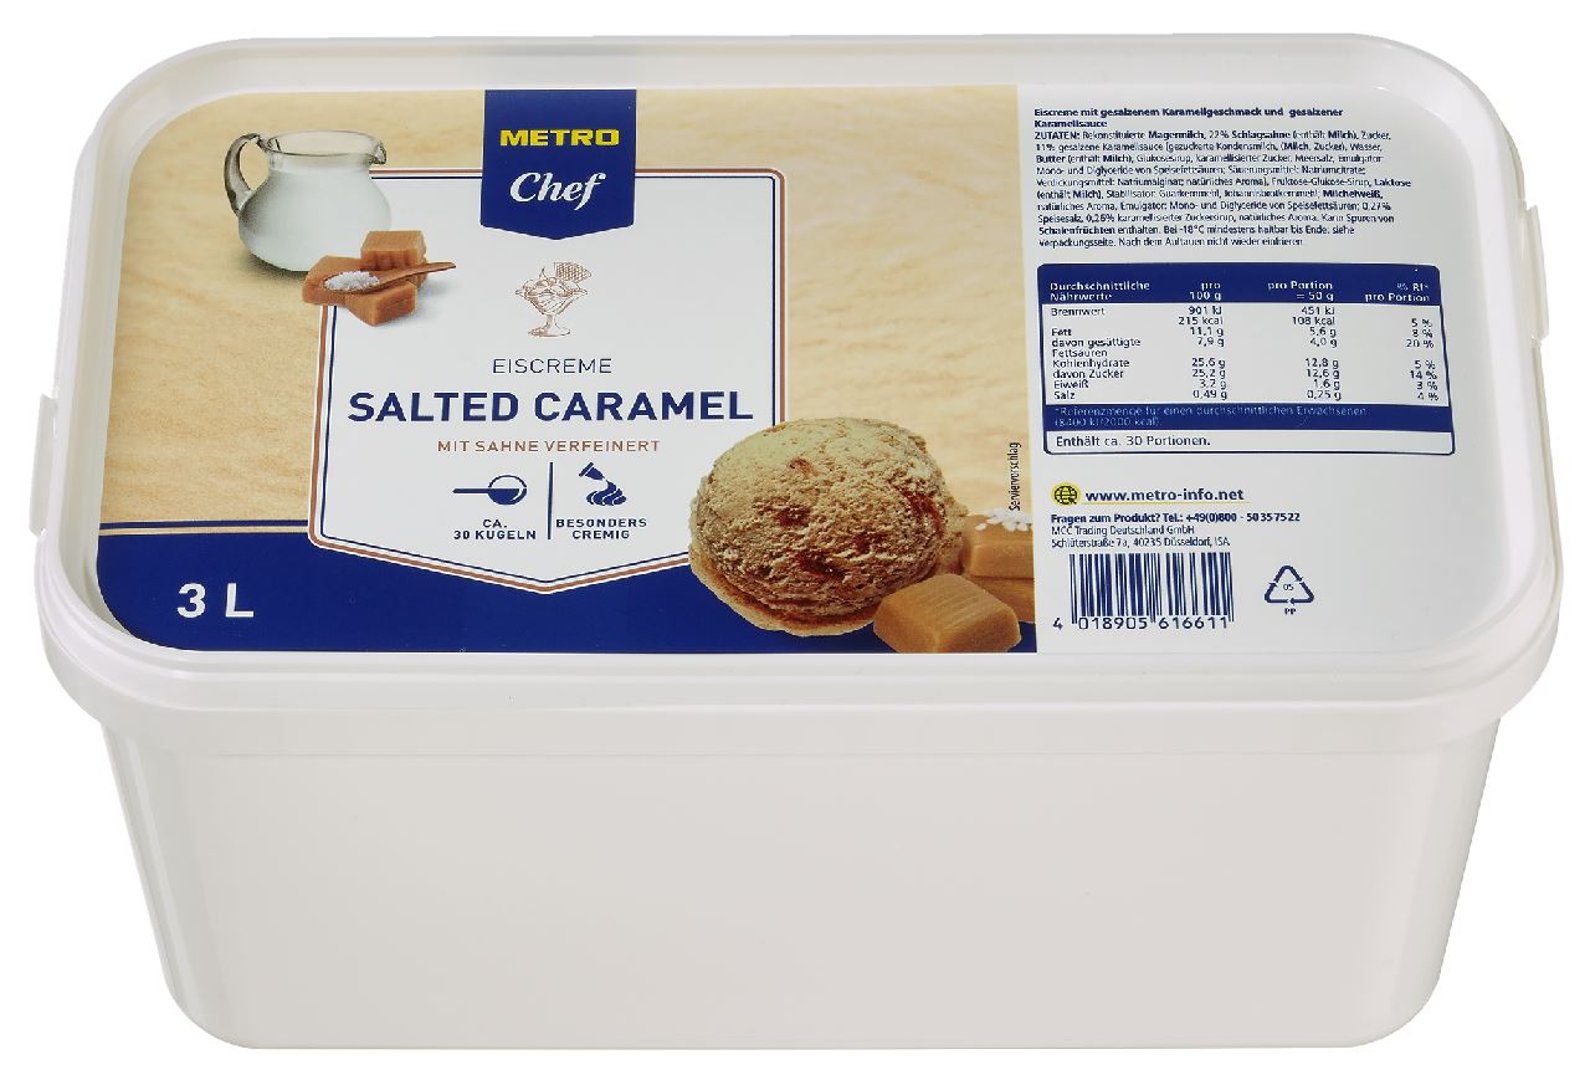 METRO Chef - Eiscreme Salted Caramel, tiefgefroren - 3 l Kanne